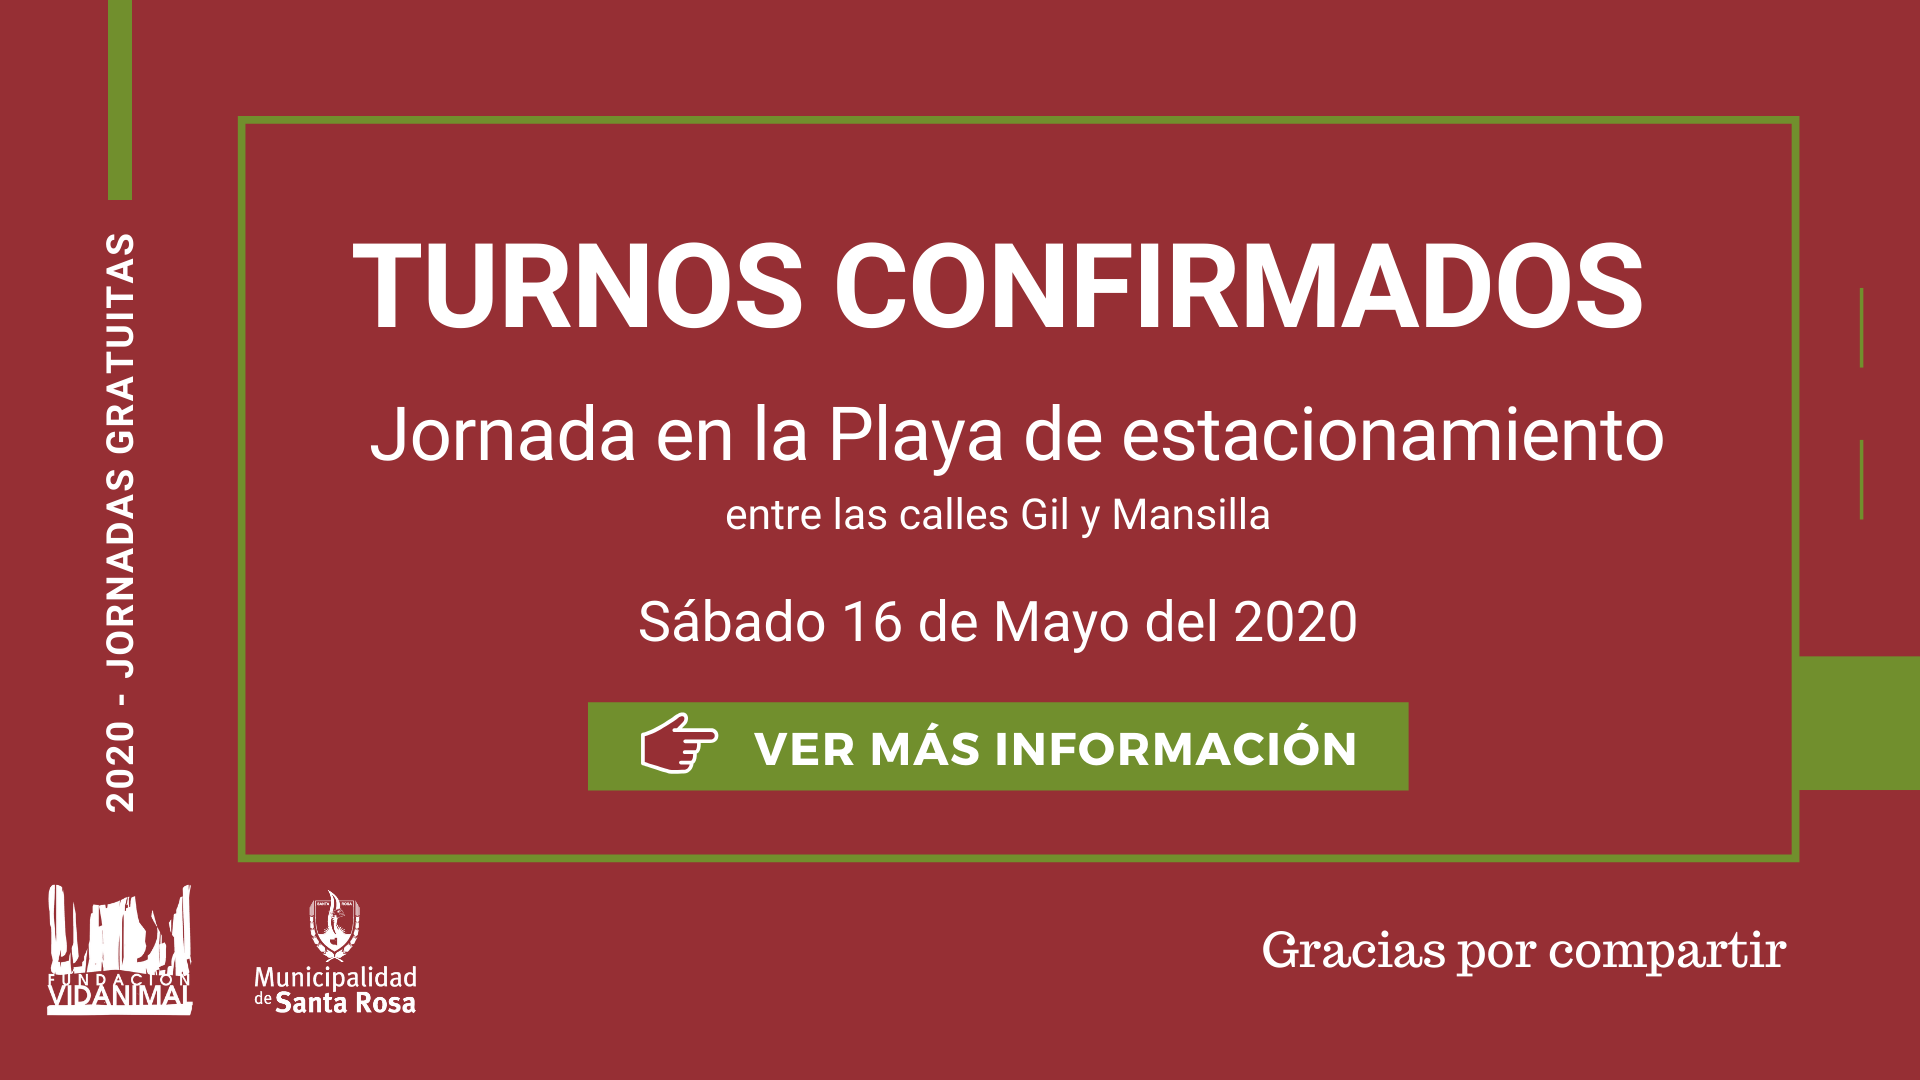 Lista de turnos confirmados: Jornada Playa de estacionamiento, entre las calles Gil y Mansilla – Sábado 16 de Mayo 2020